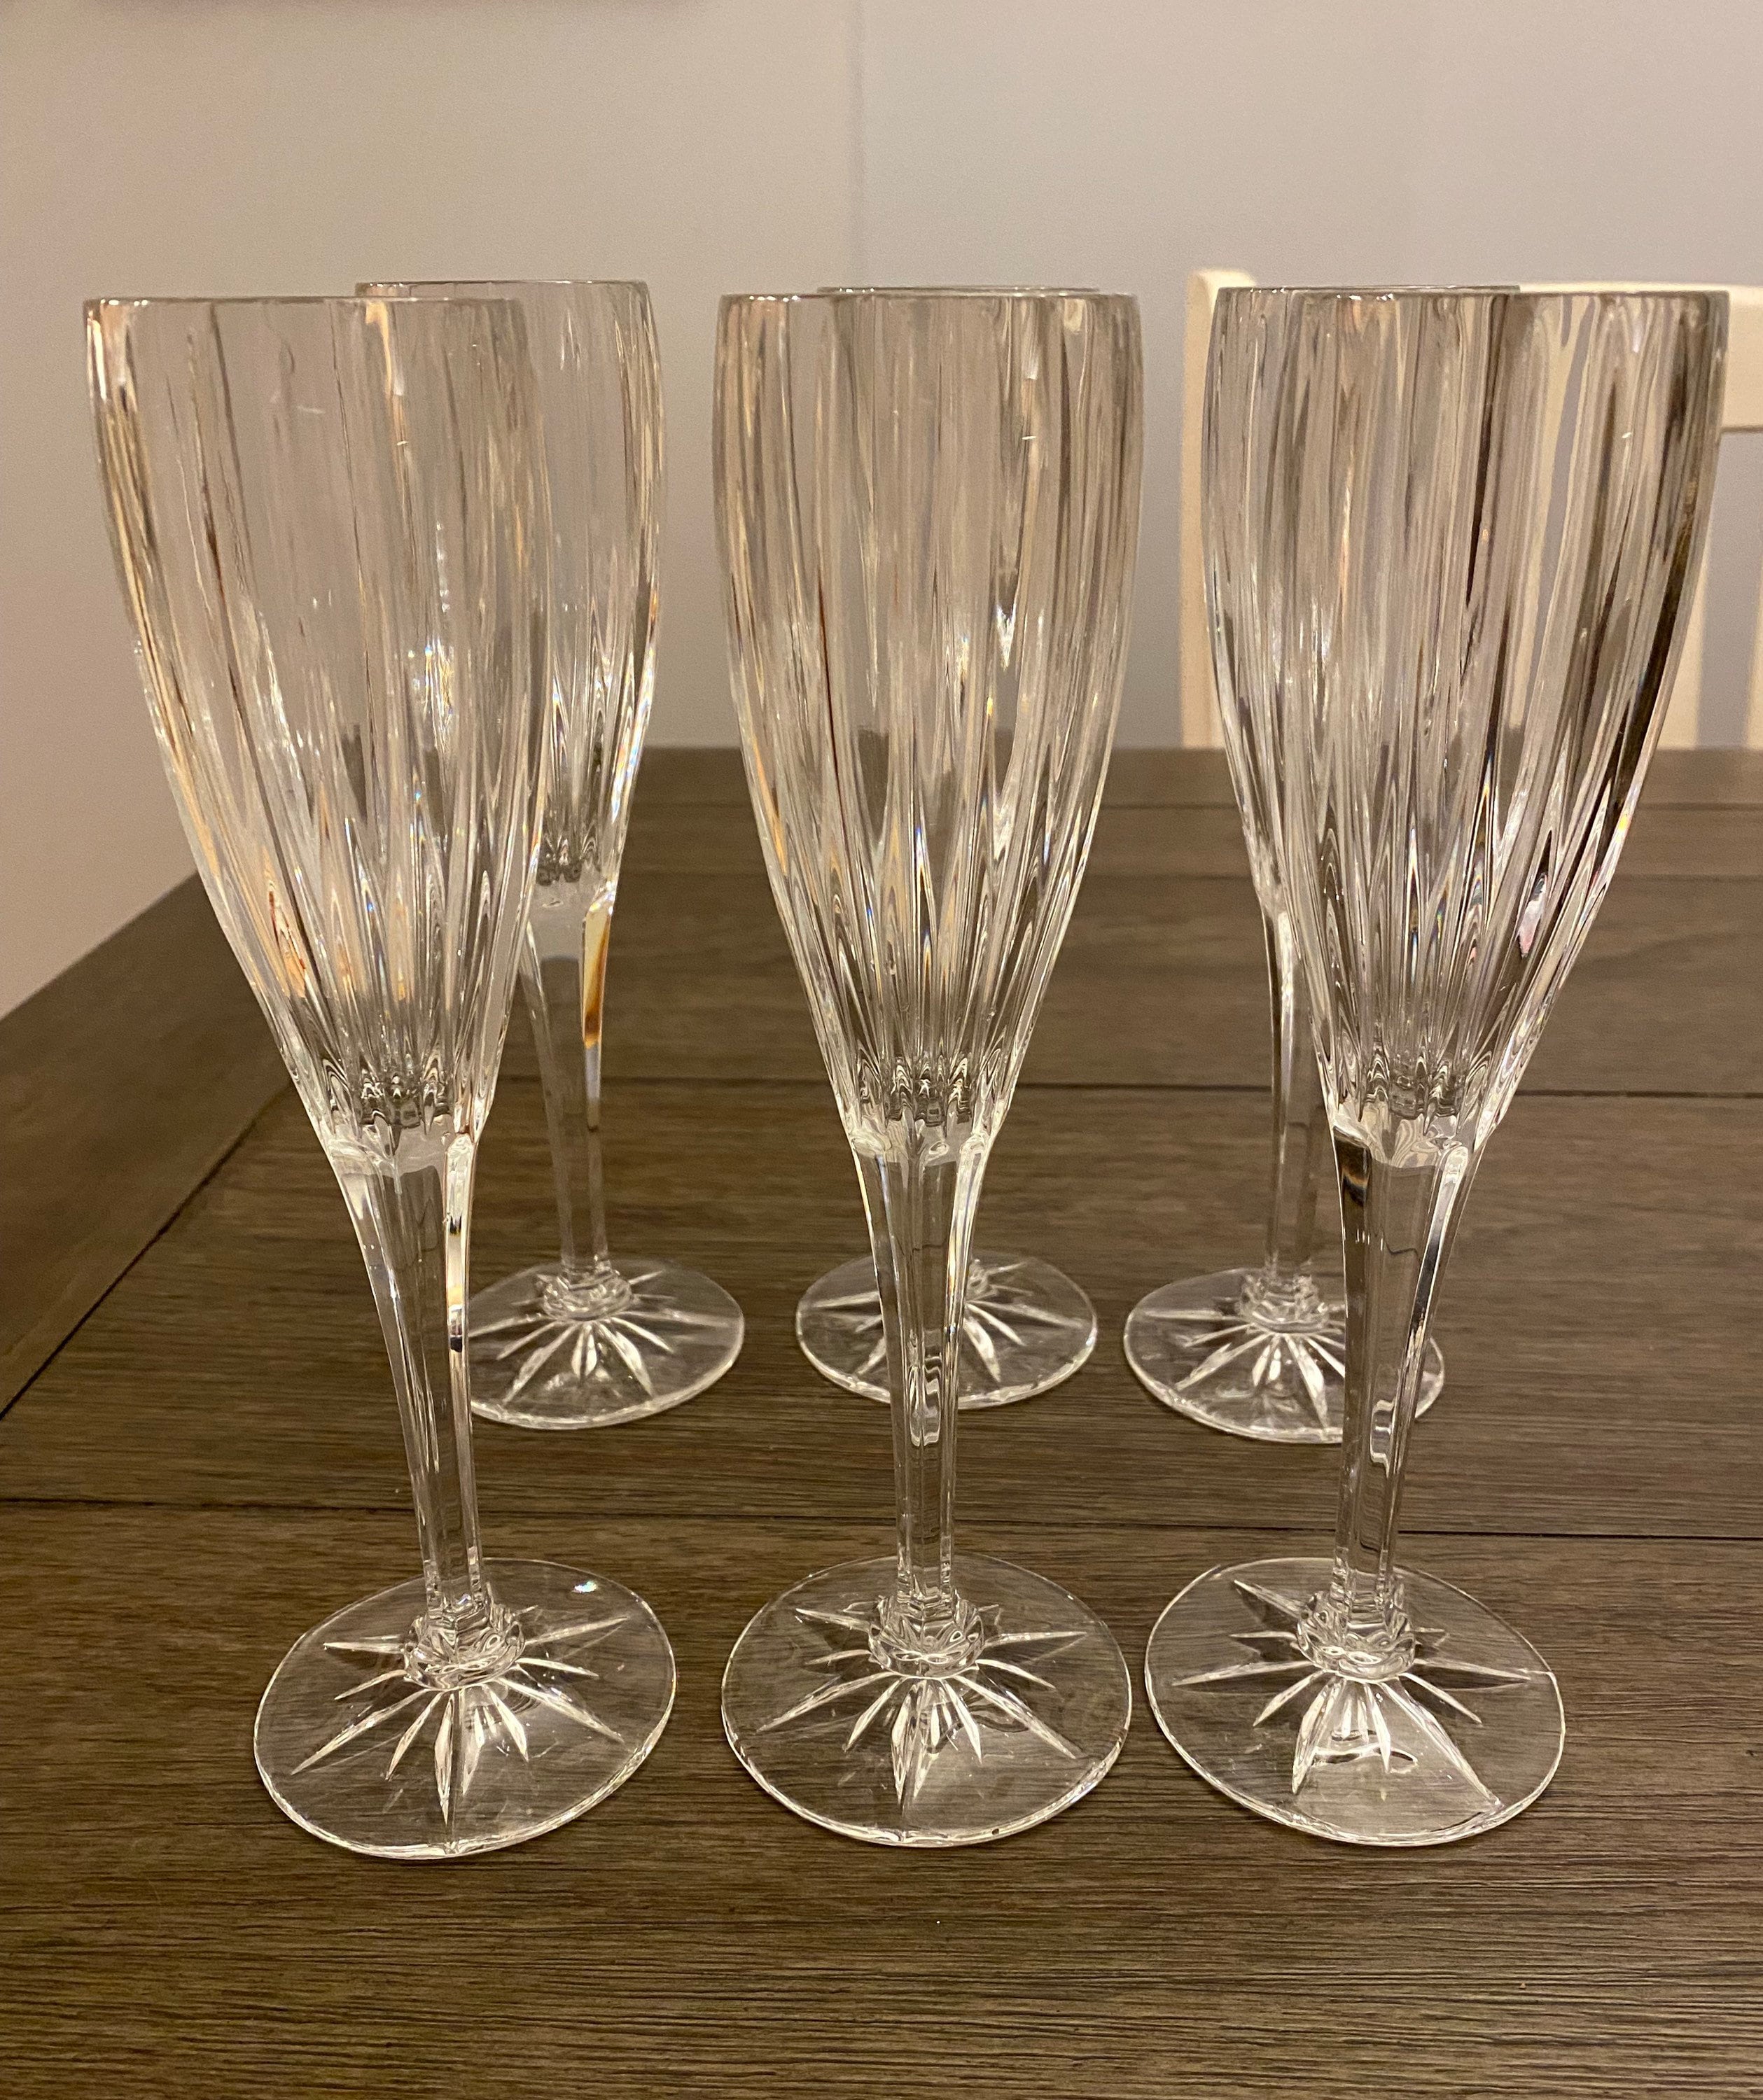 Aline Set of 4 Flute Glasses – Mikasa